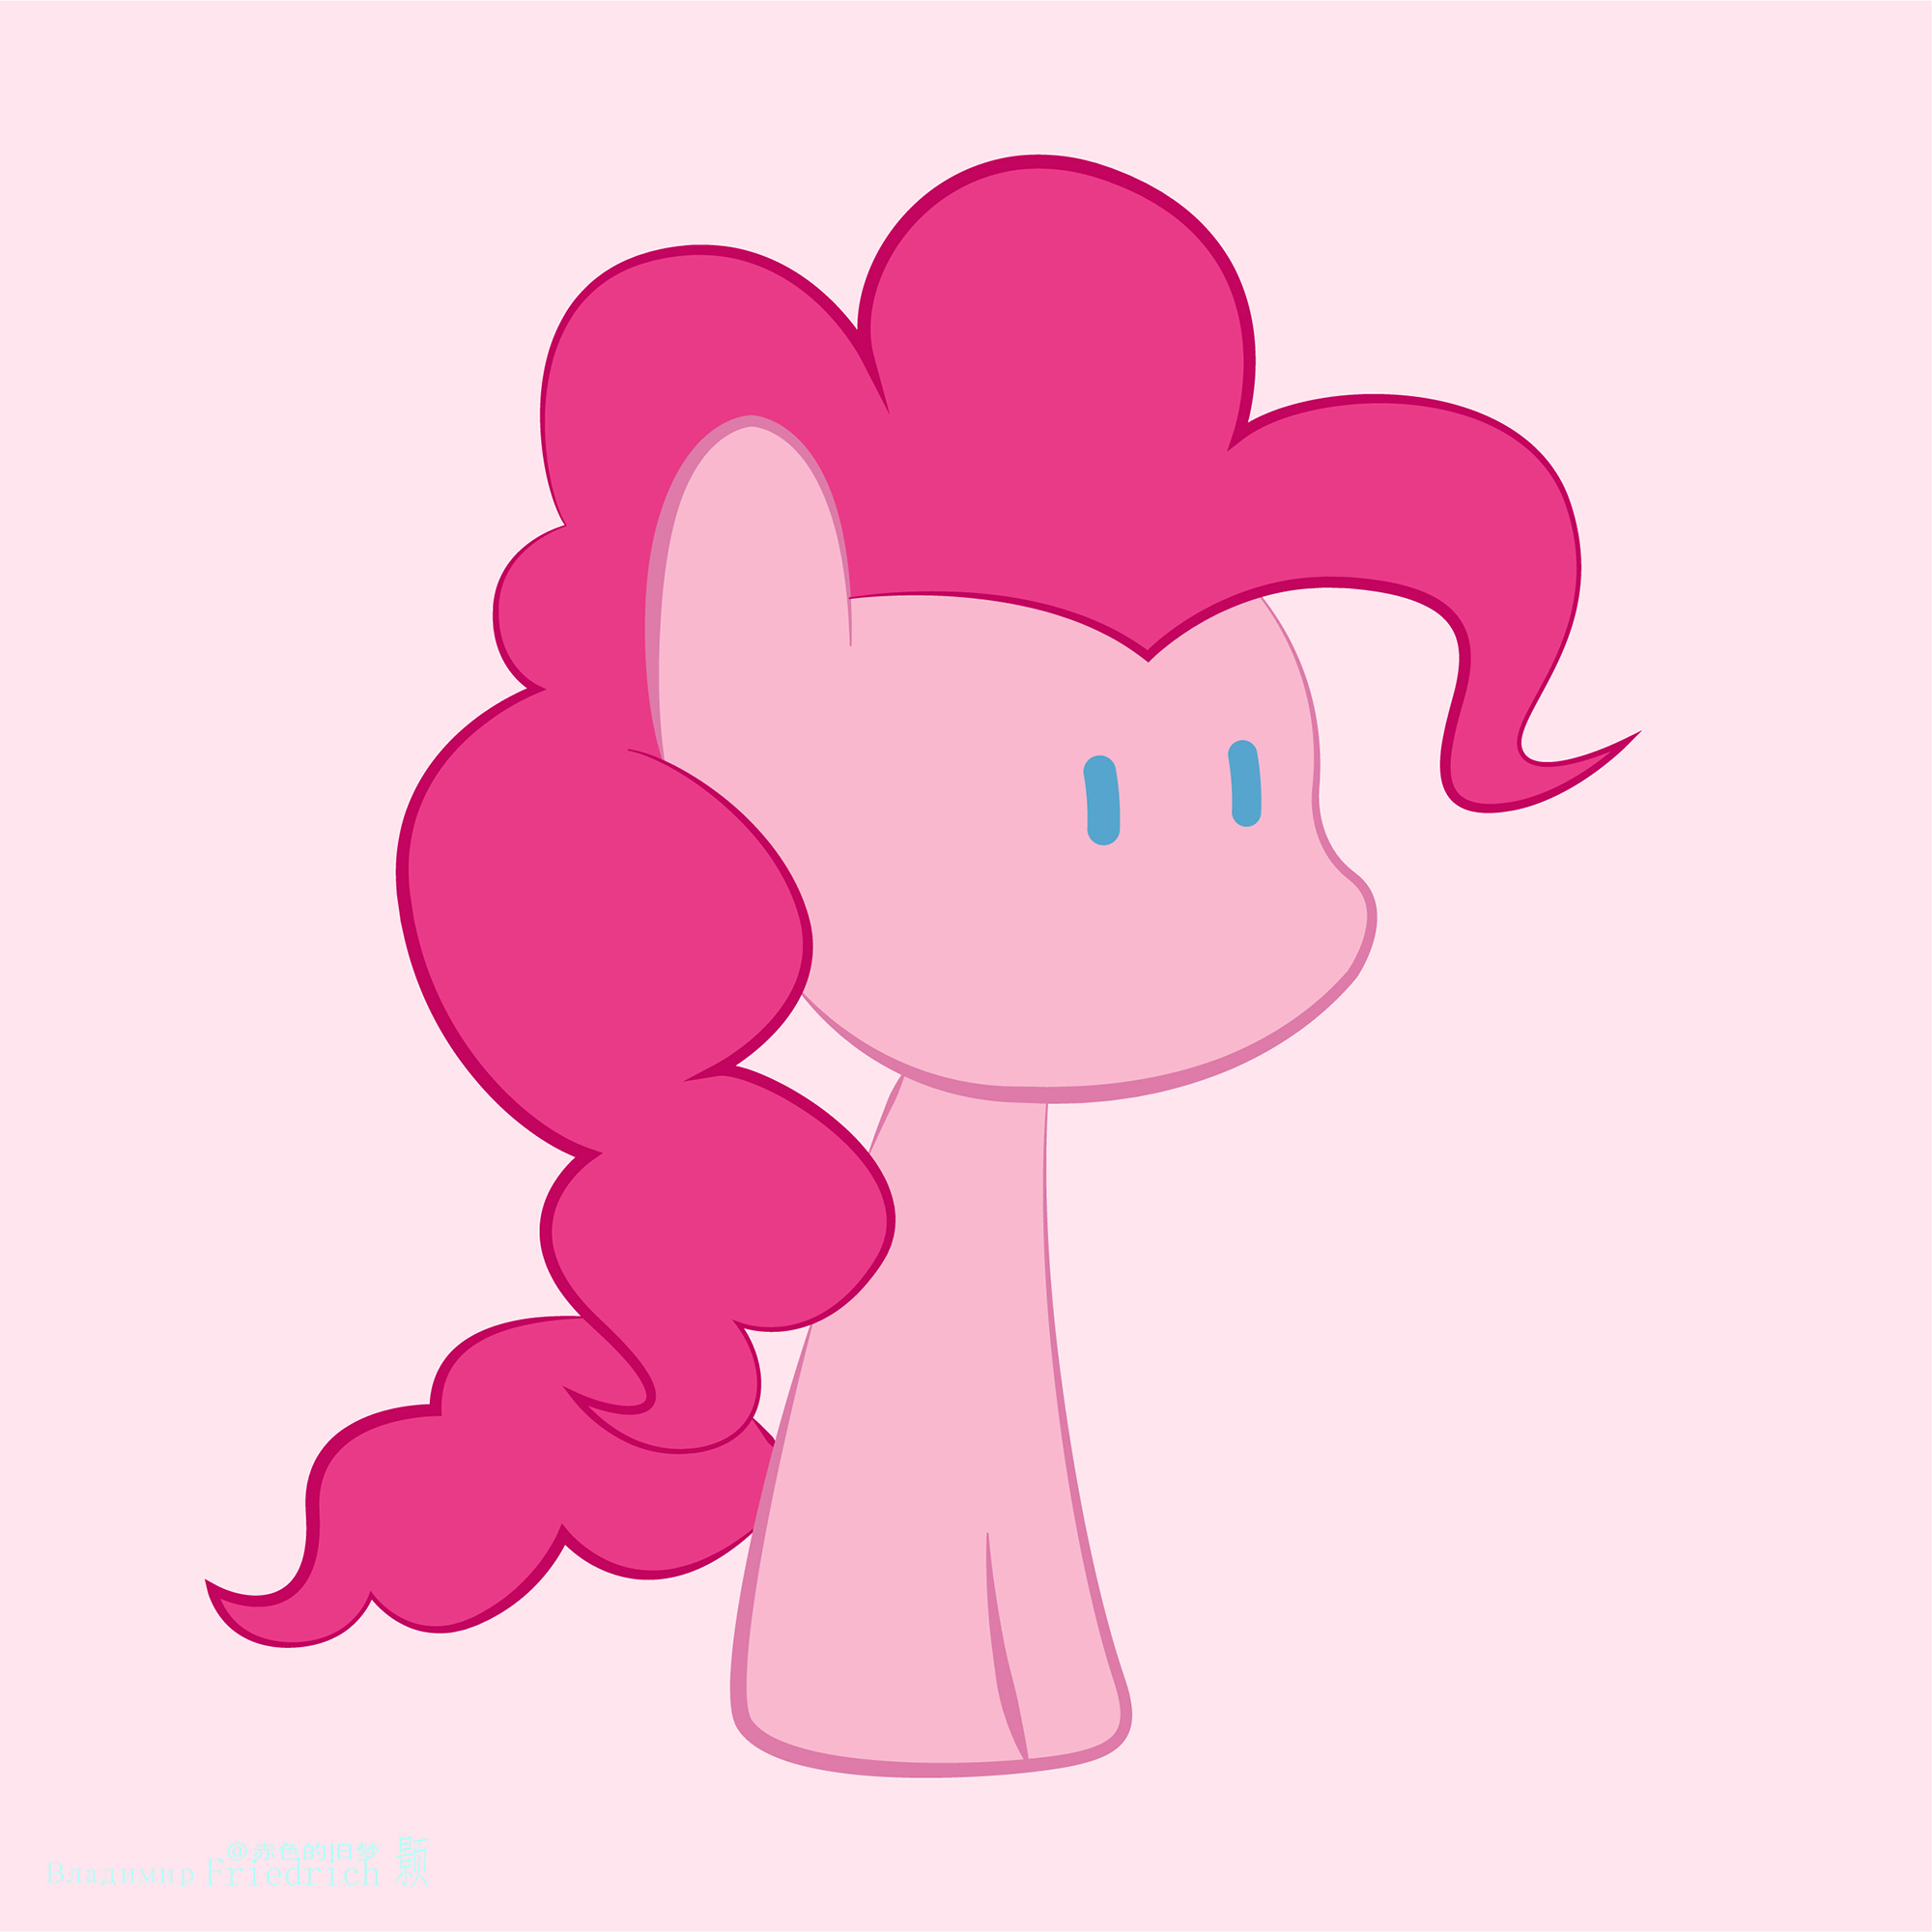 General 2000x2000 My Little Pony Pinkie Pie simple background pony minimalism digital art